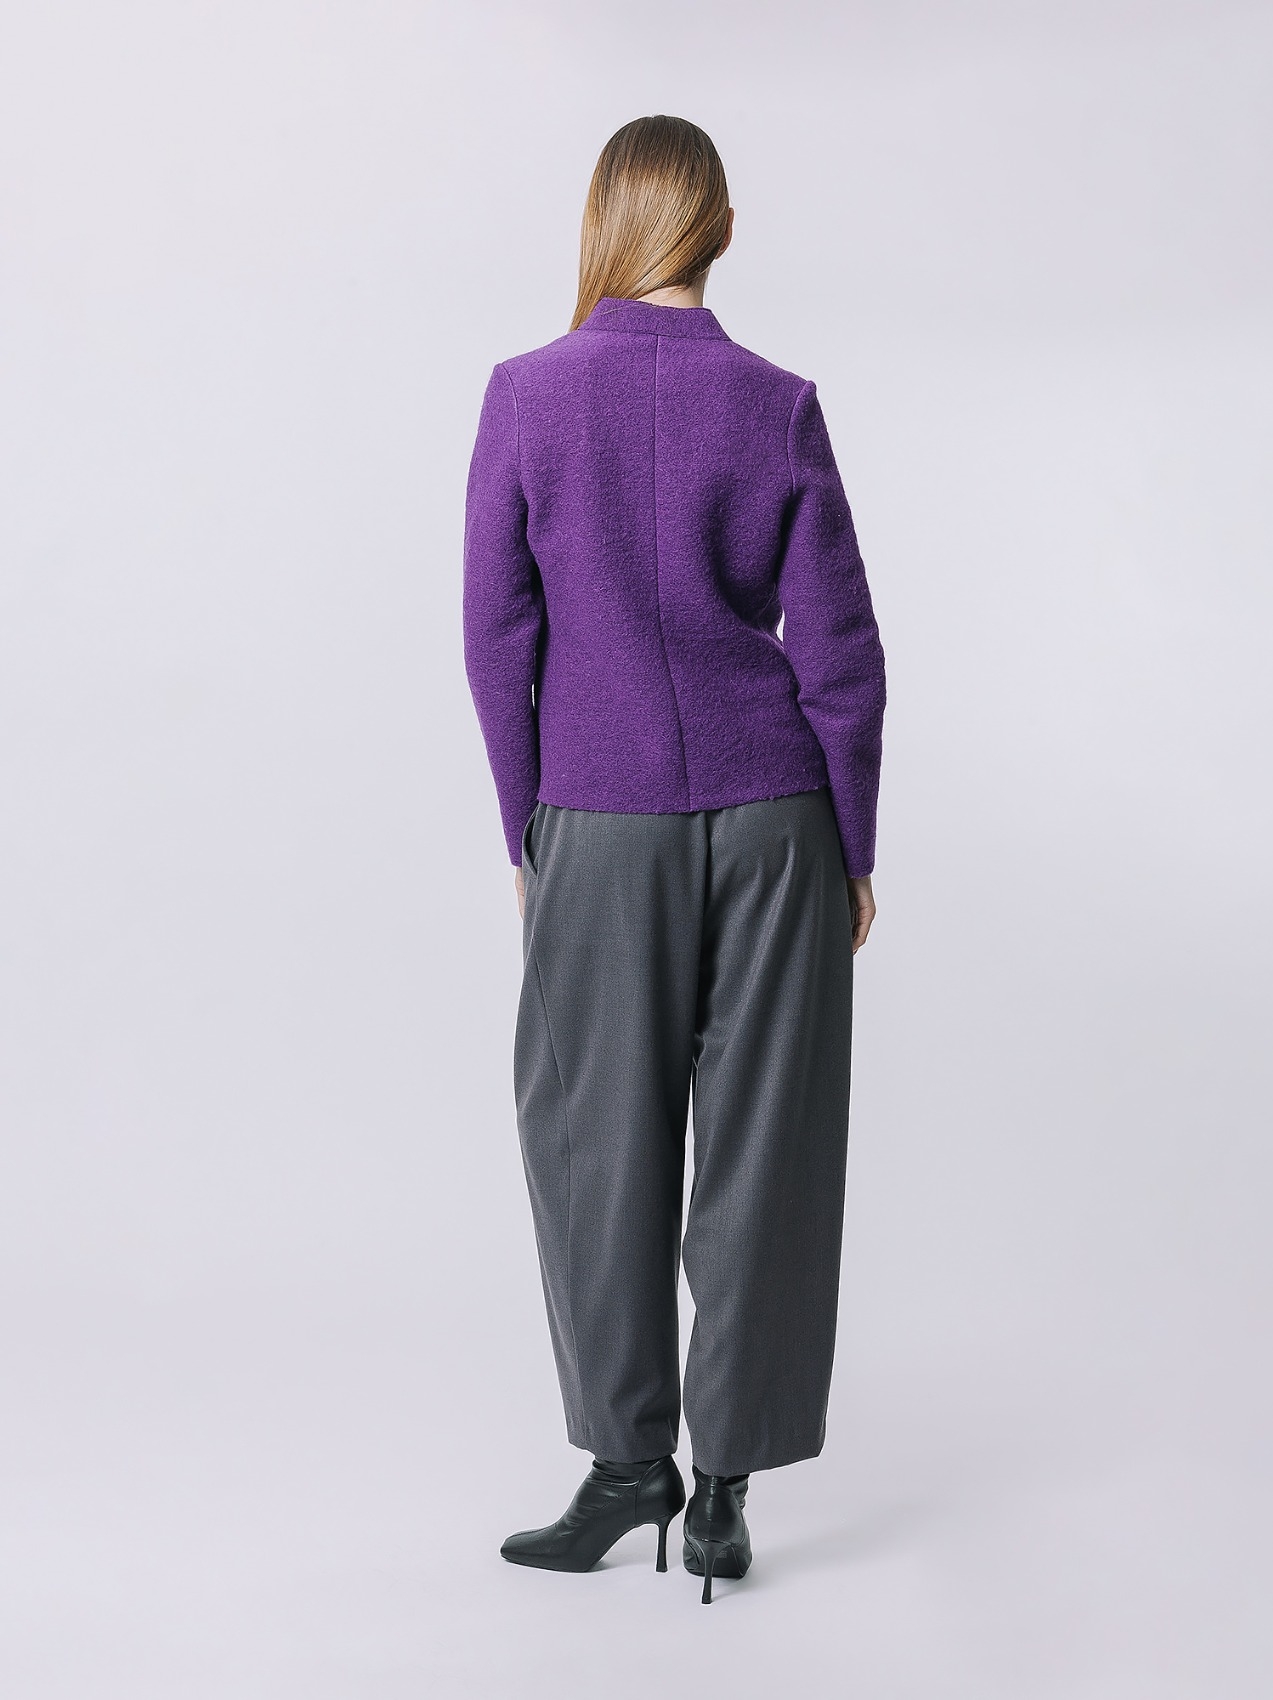 Giacca in lana cotta modello Luandreas, S